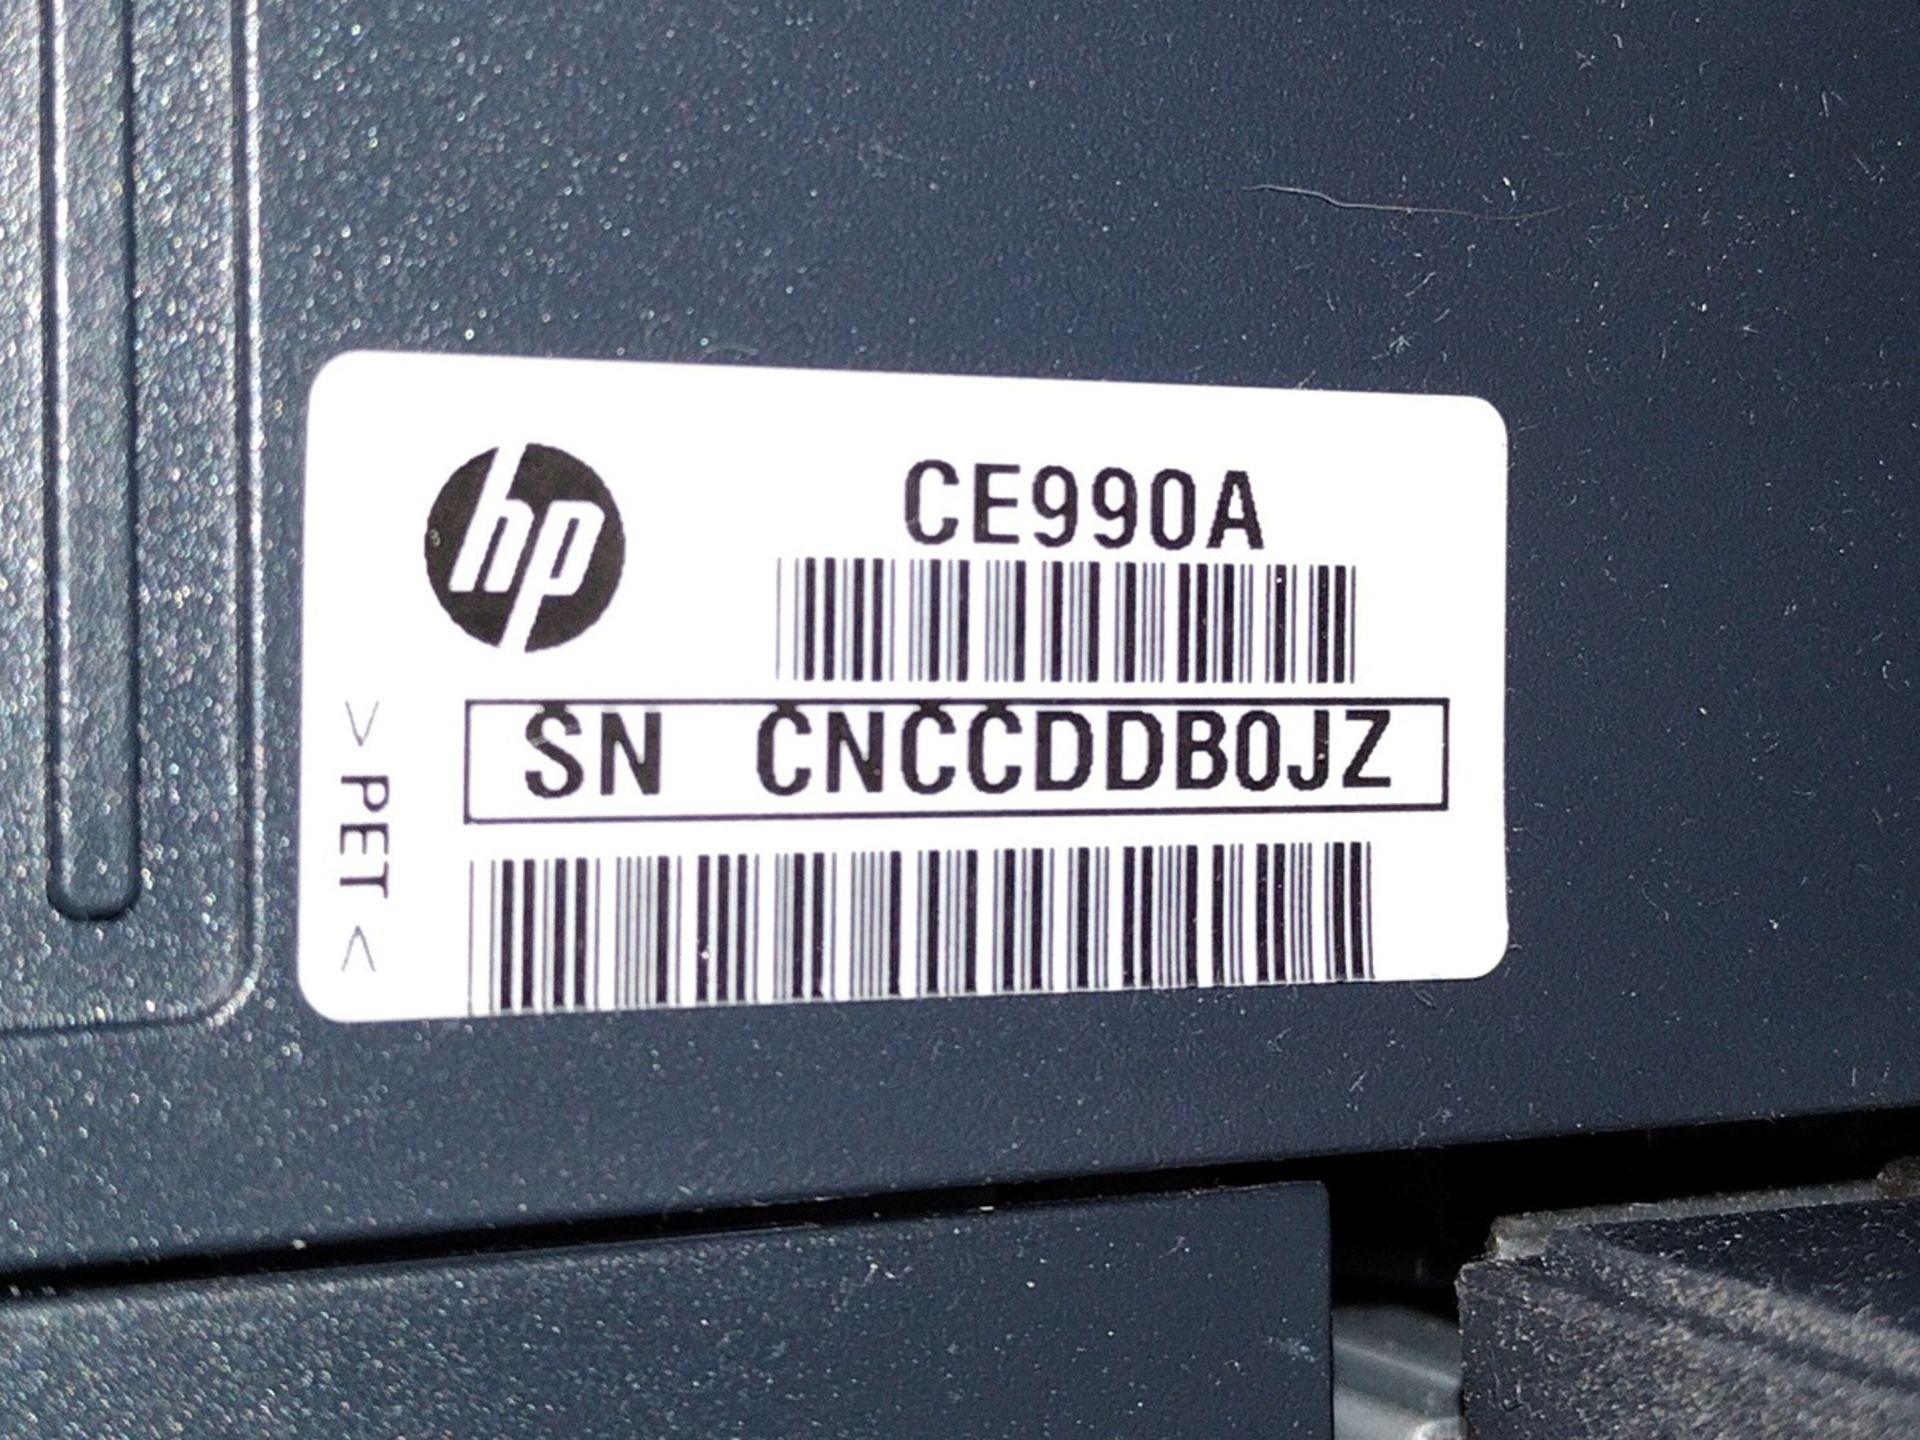 HP LaserJet 600 M601 Printer - Image 4 of 4